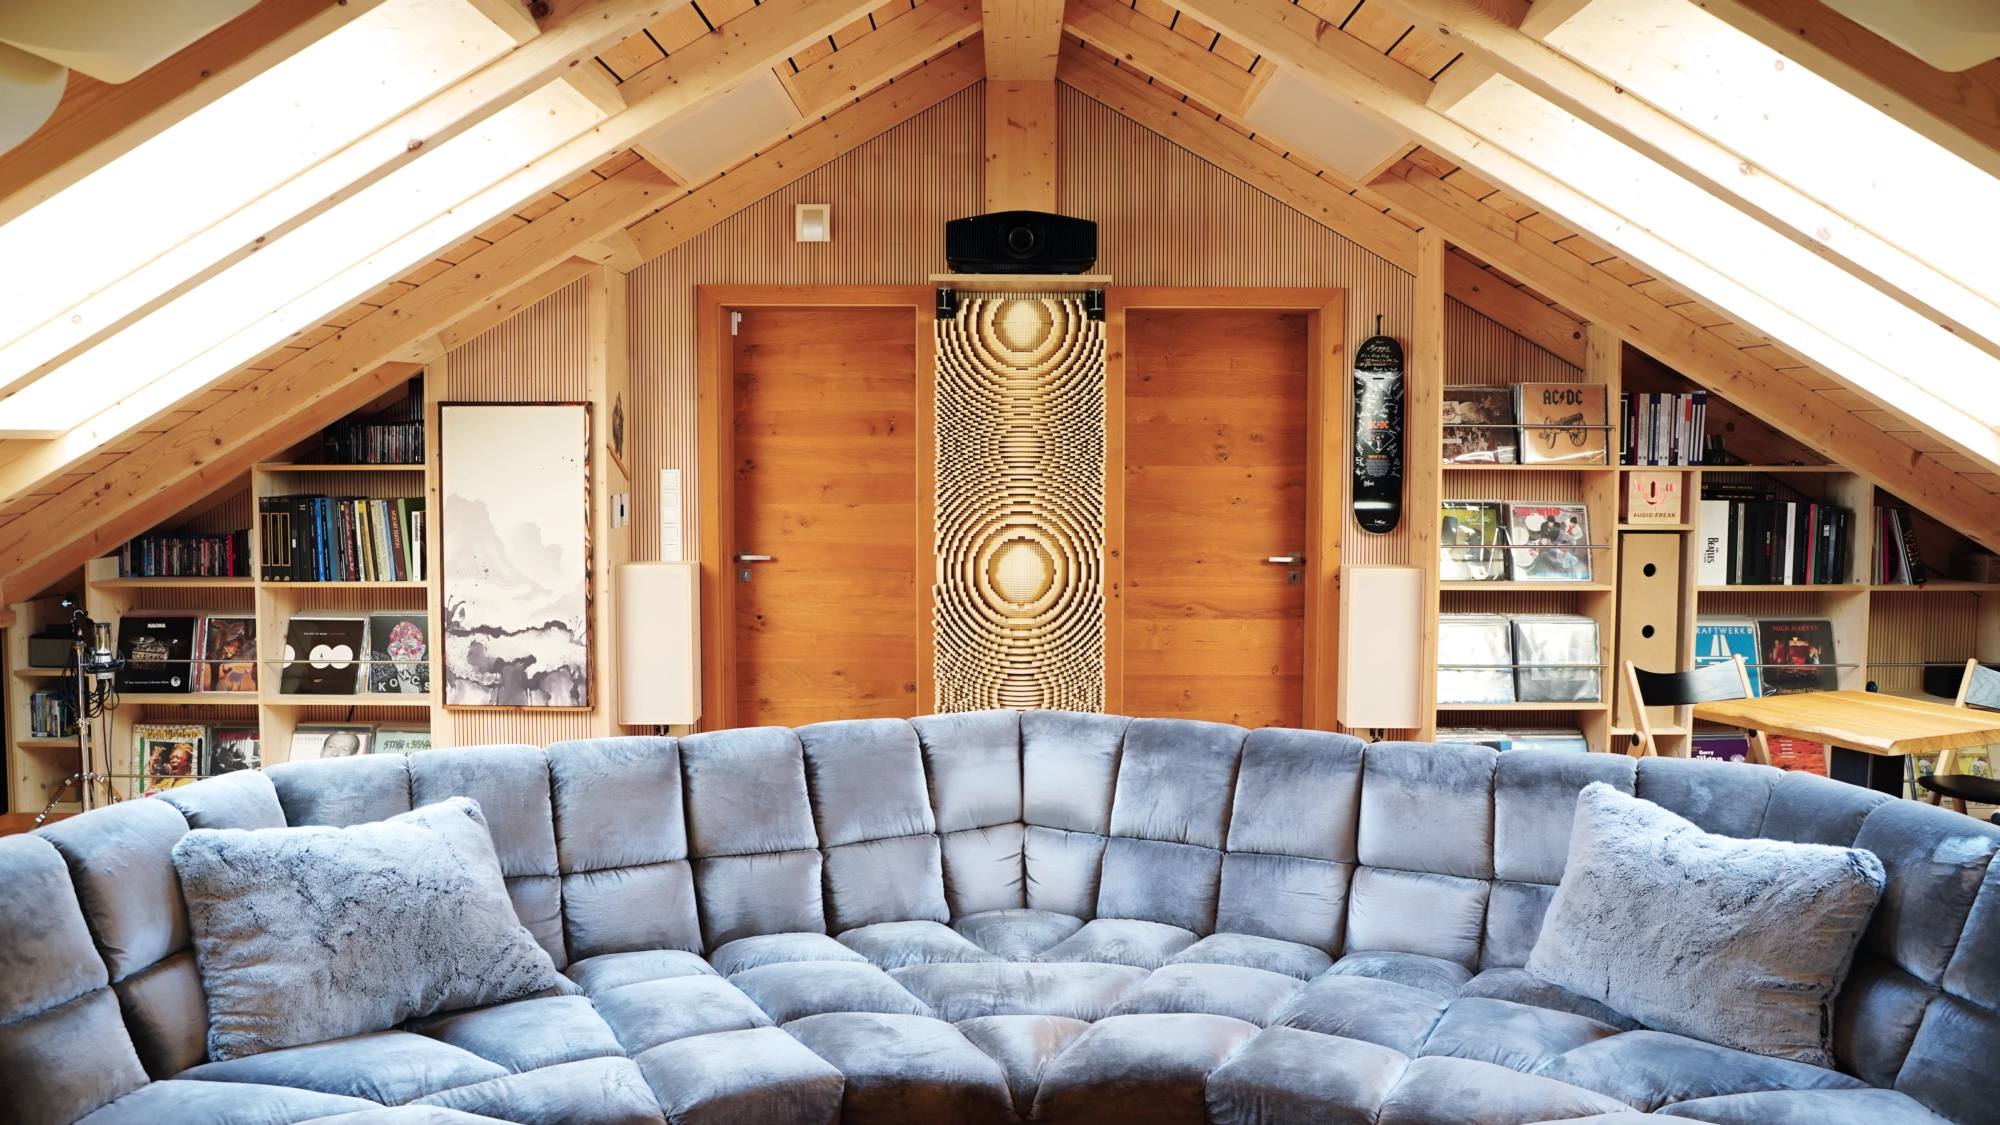 Hörraum von Audio-Freak mit akustischer Optimierung – Blick von der Anlage auf das Sofa, dahinter Regale, Beamer, großer Diffusor und Wände mit Lignotrend-Elementen